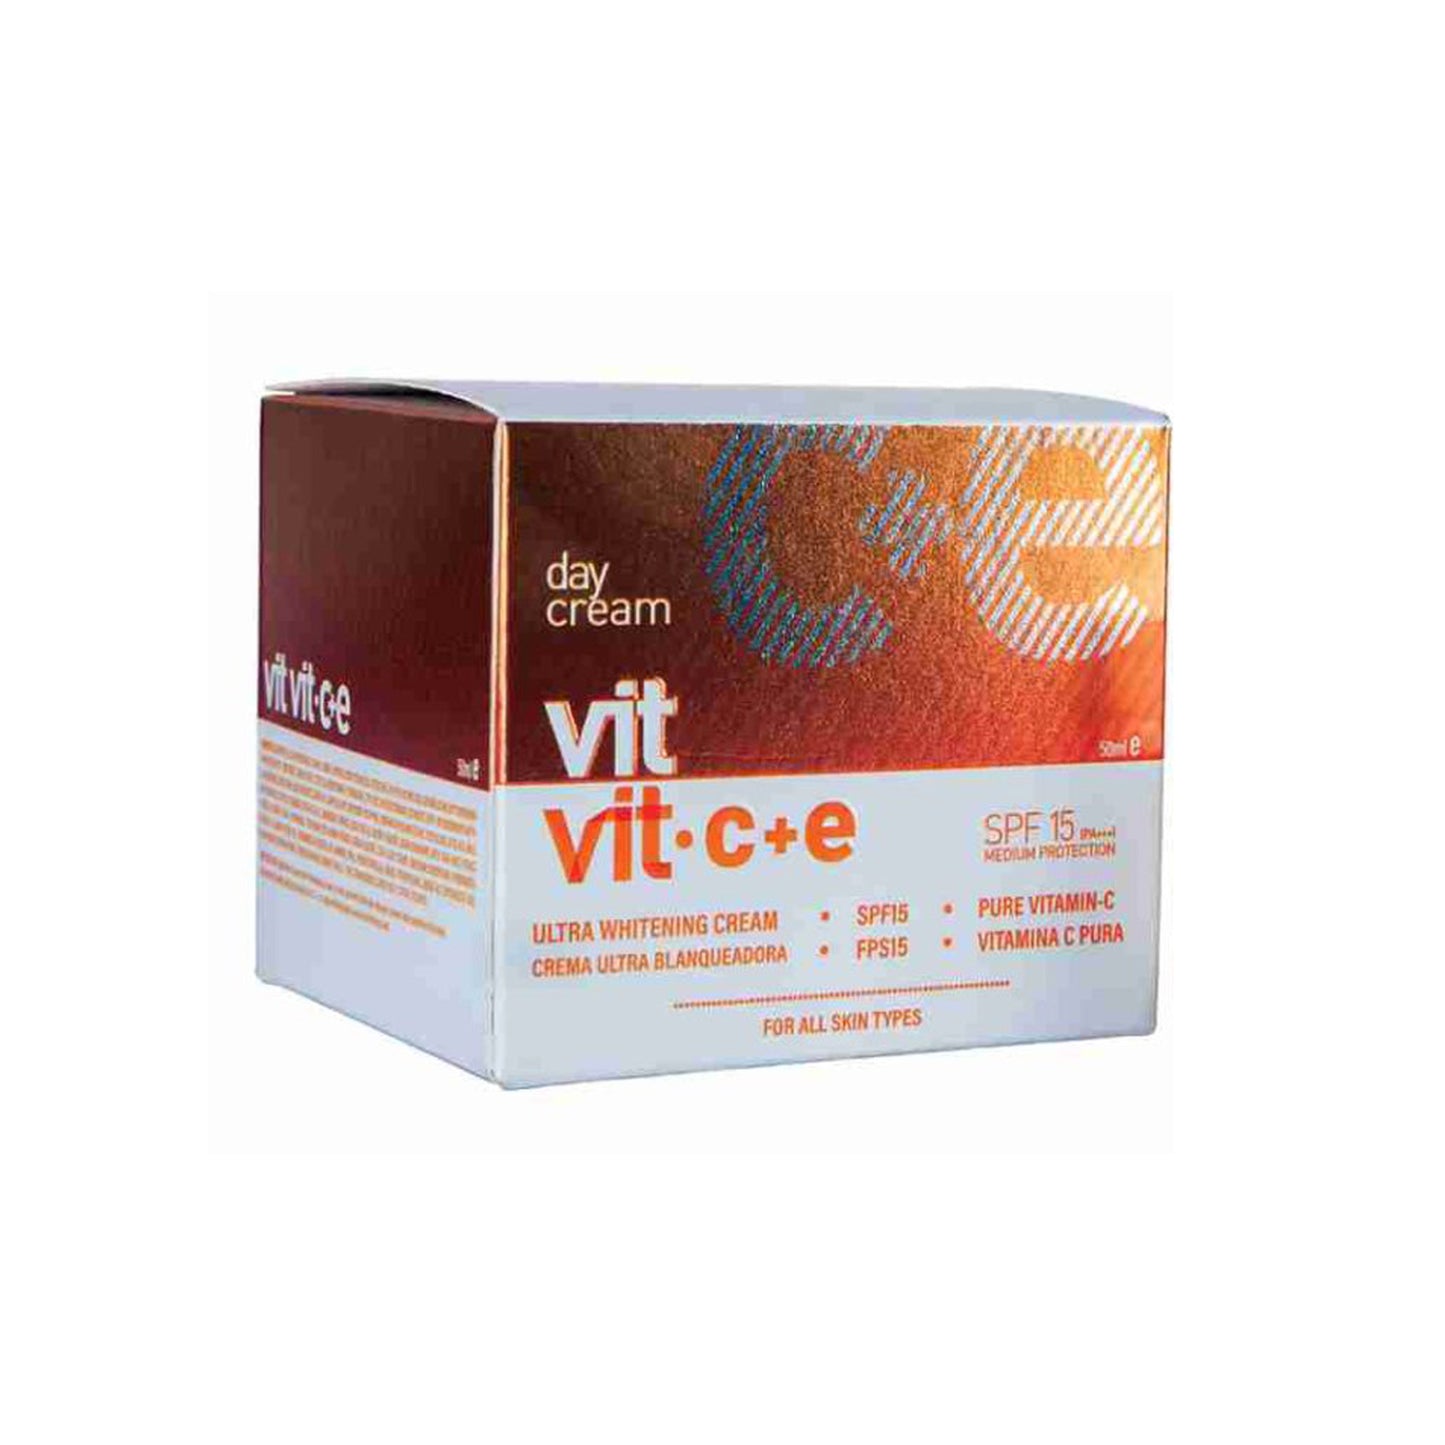 Vit Vit. C+E Day Cream, 50gm